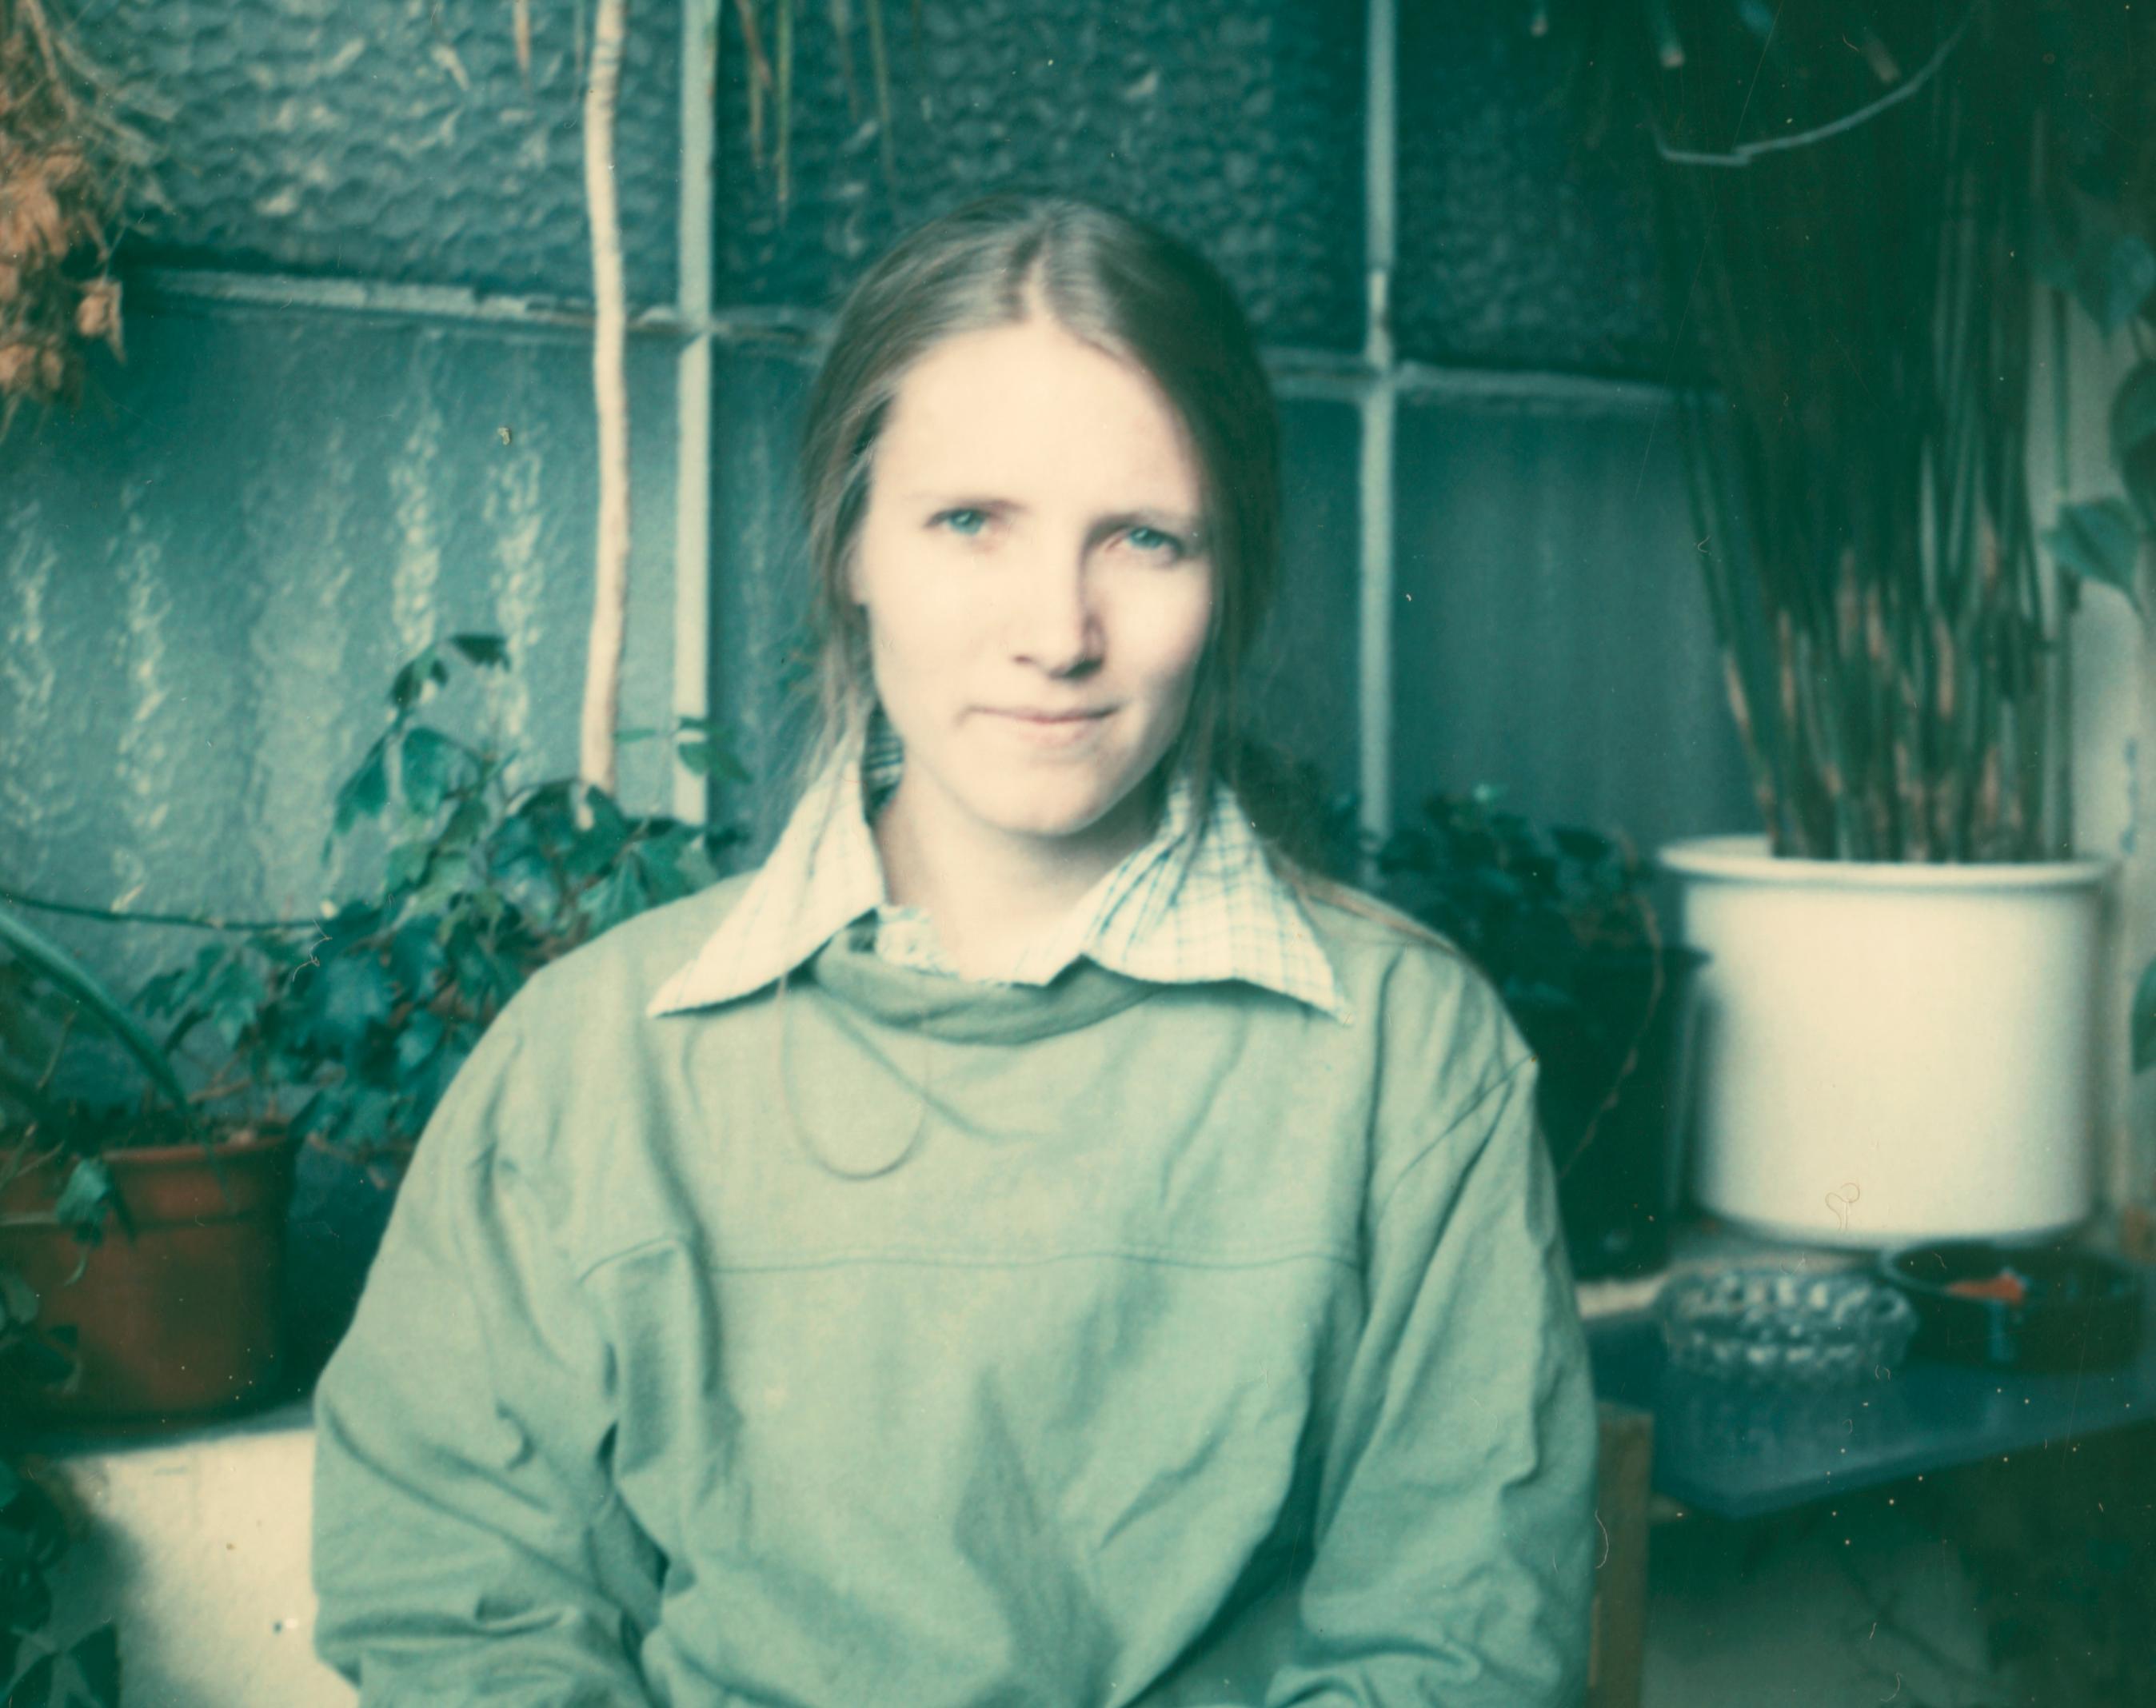 Self Portrait in Green, 1993 - Contemporary Photograph by Stefanie Schneider